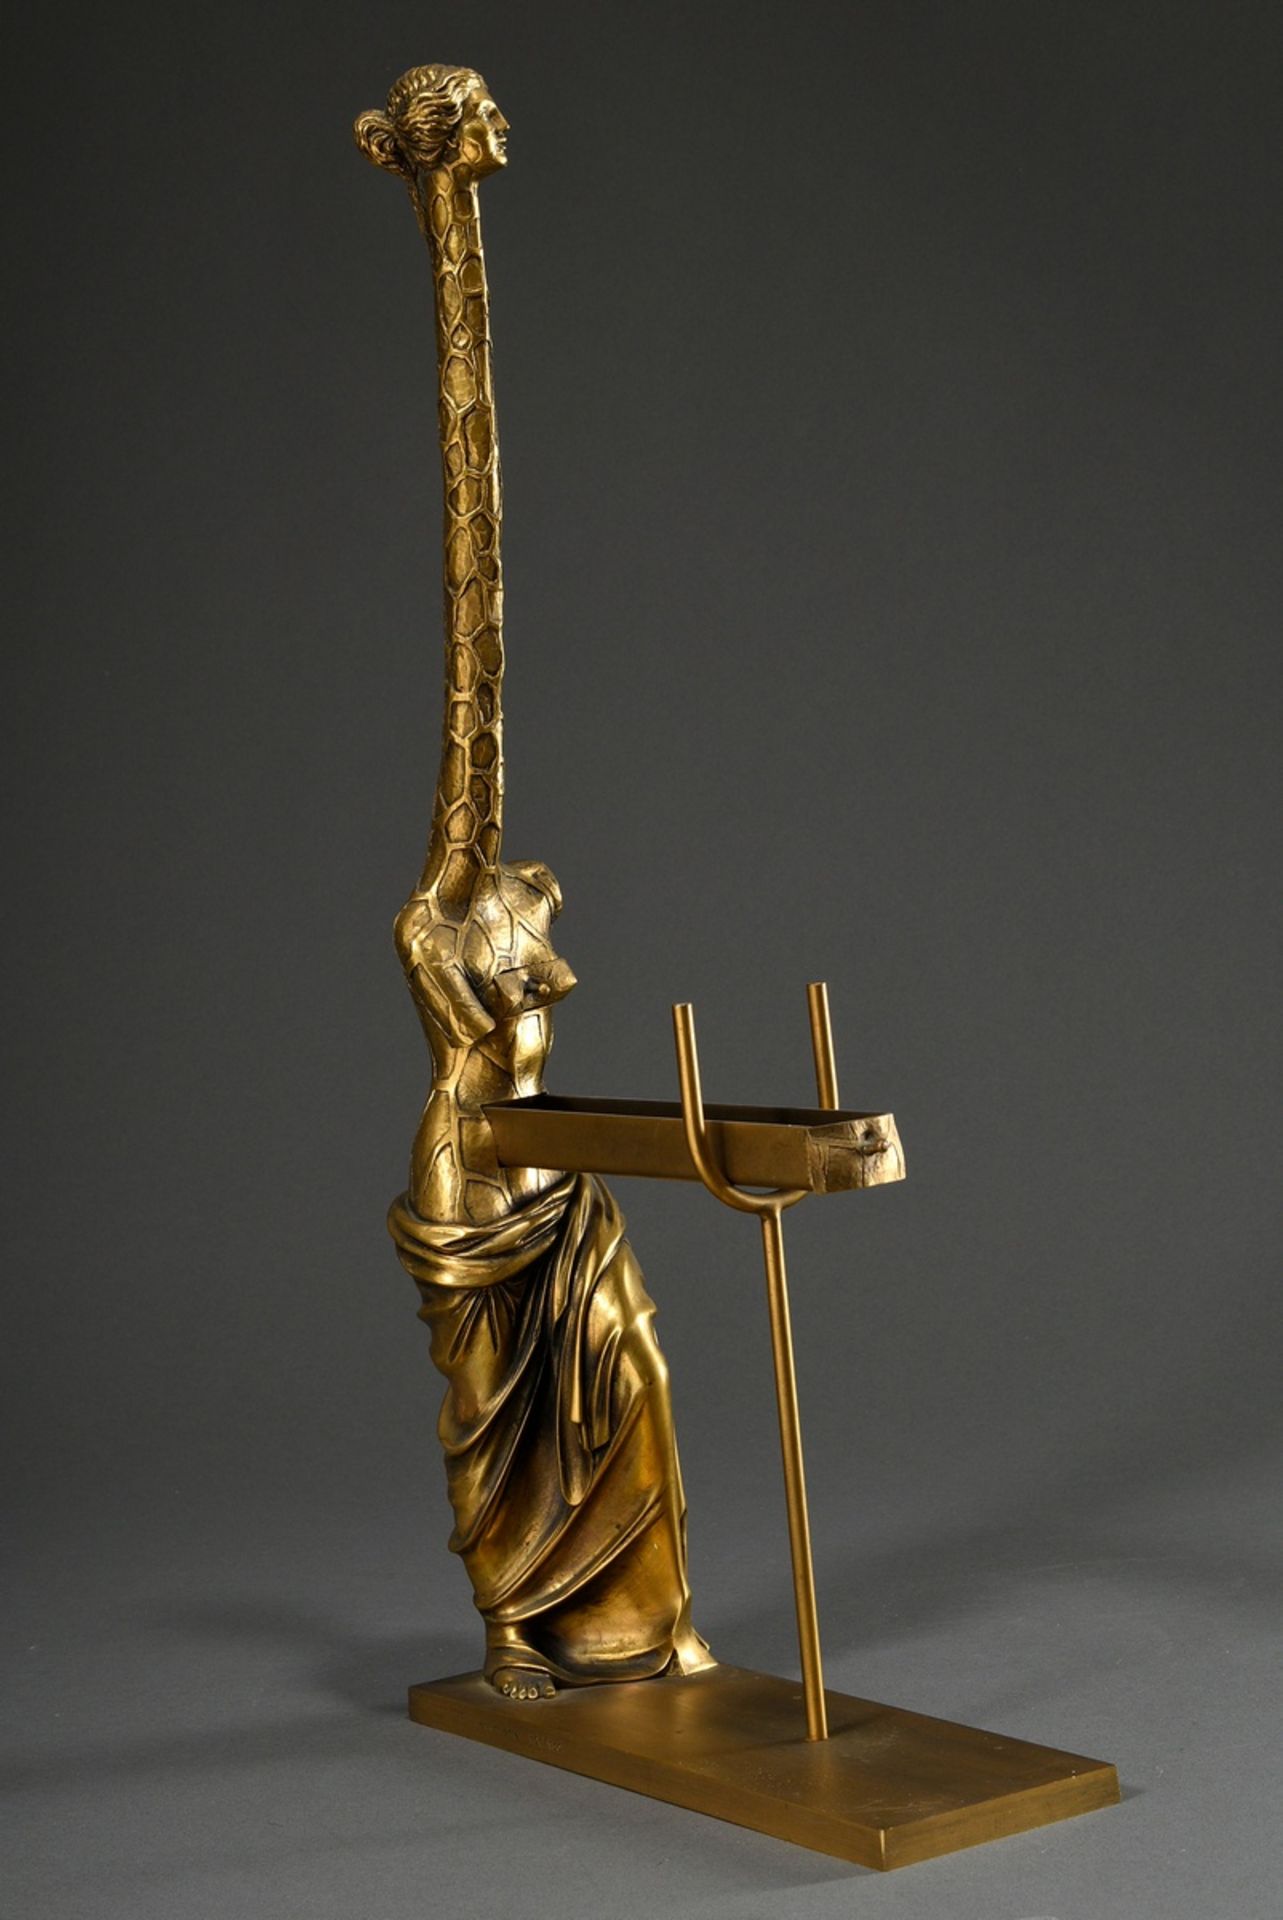 Dalí, Salvador (1904-1989) „Venus à la giraffe“, Bronze, golden patiniert, mit beweglichen Elemente